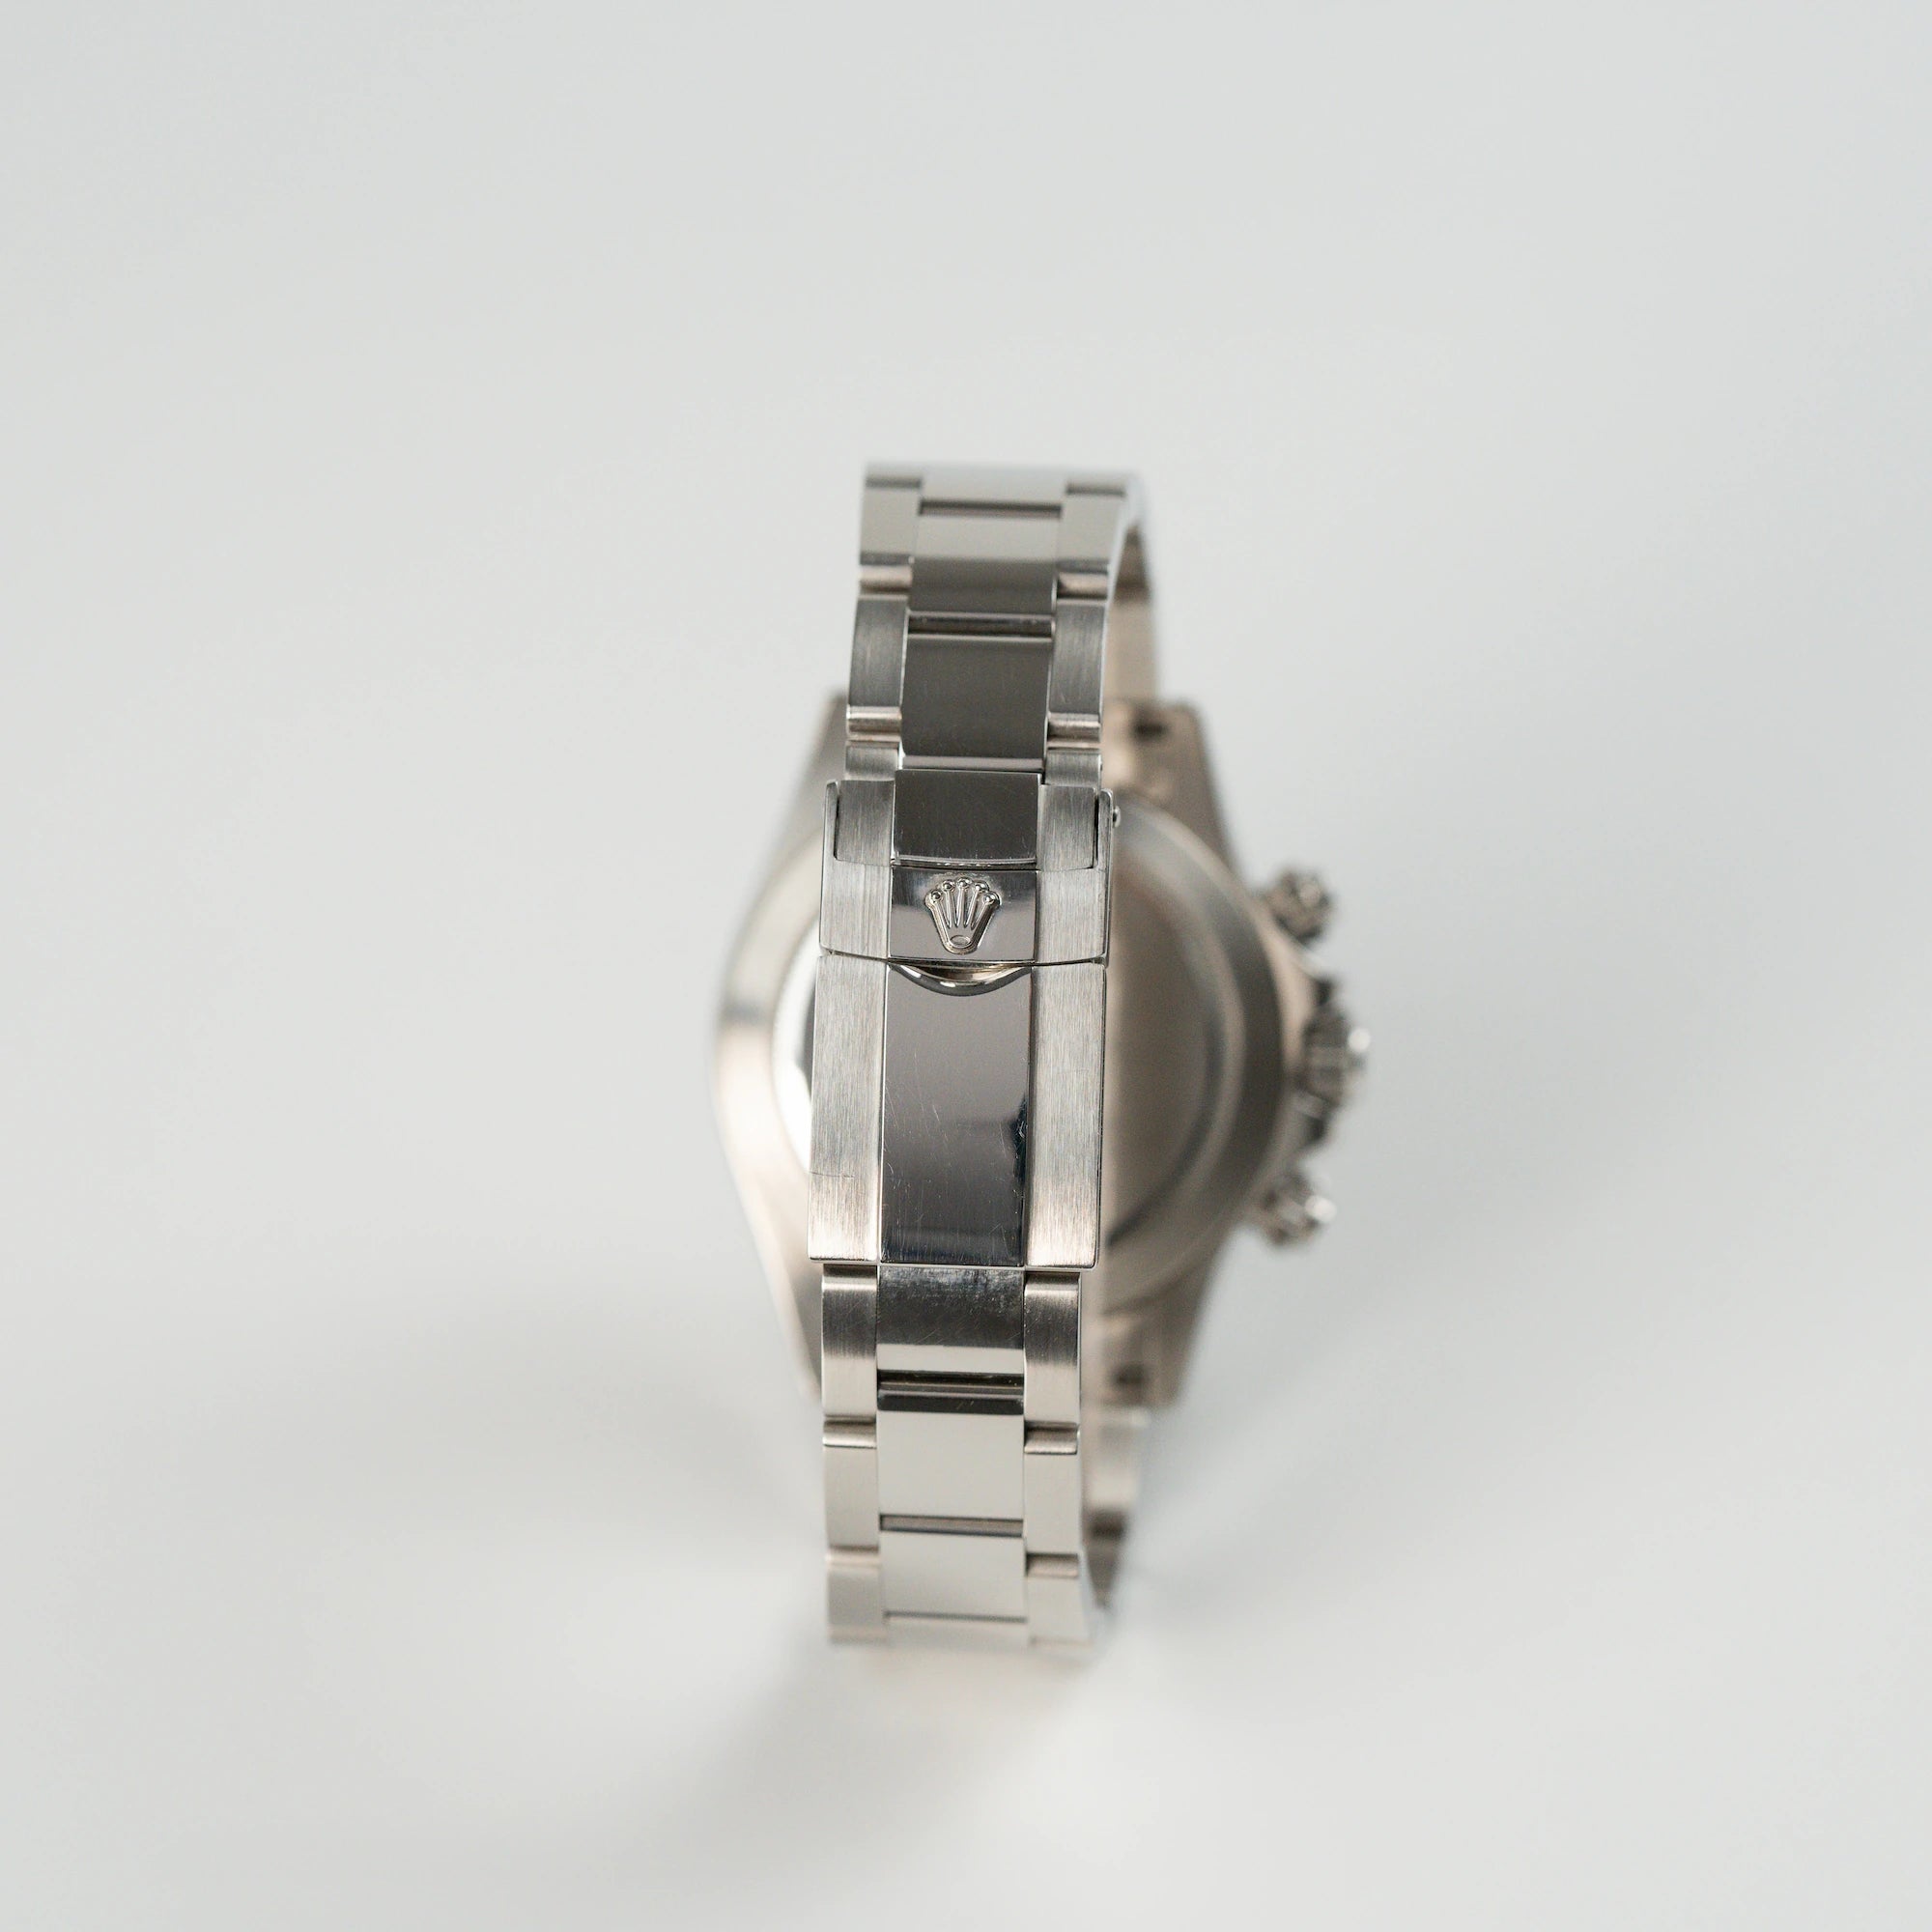 Armband aus Edelstahl der Rolex Cosmograph Daytona, Referenz 116520, mit Faltschließe